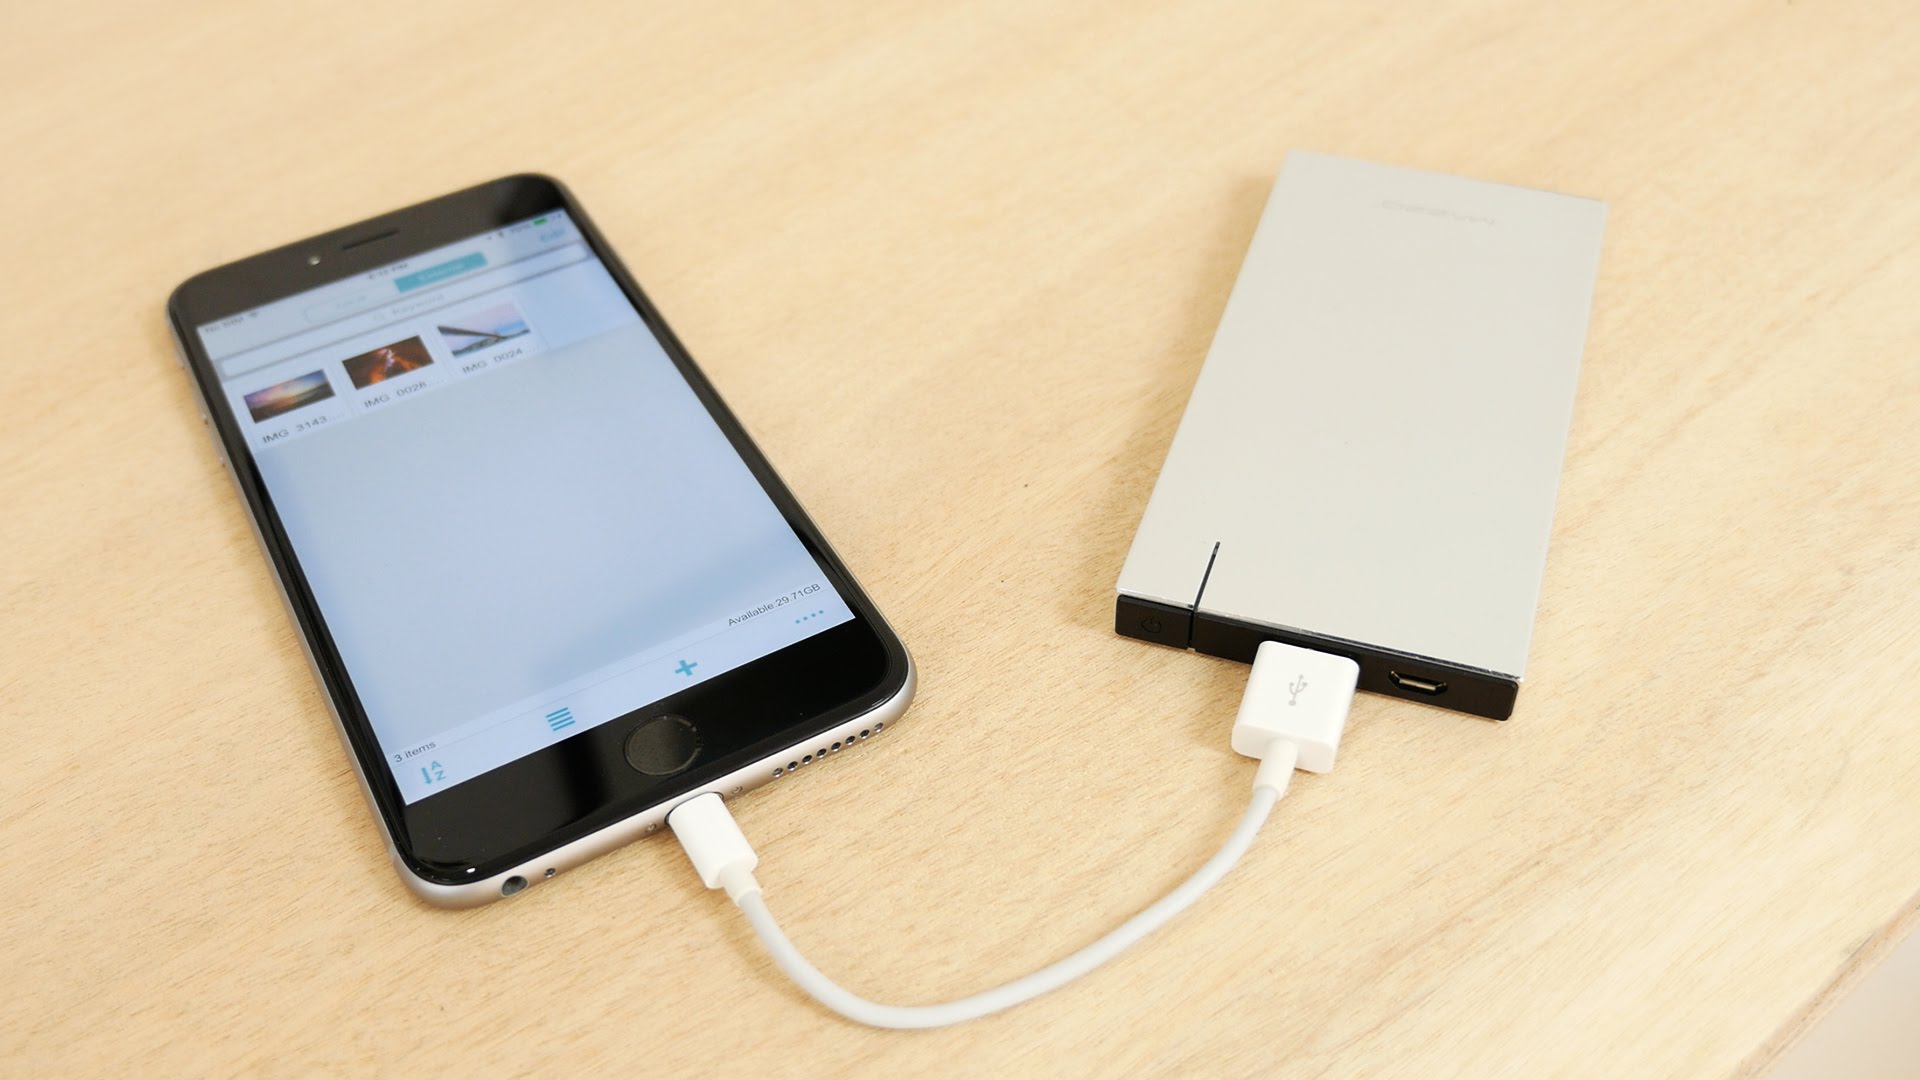 Cómo realizar copia de seguridad iPhone en disco duro externo? - PlaySat